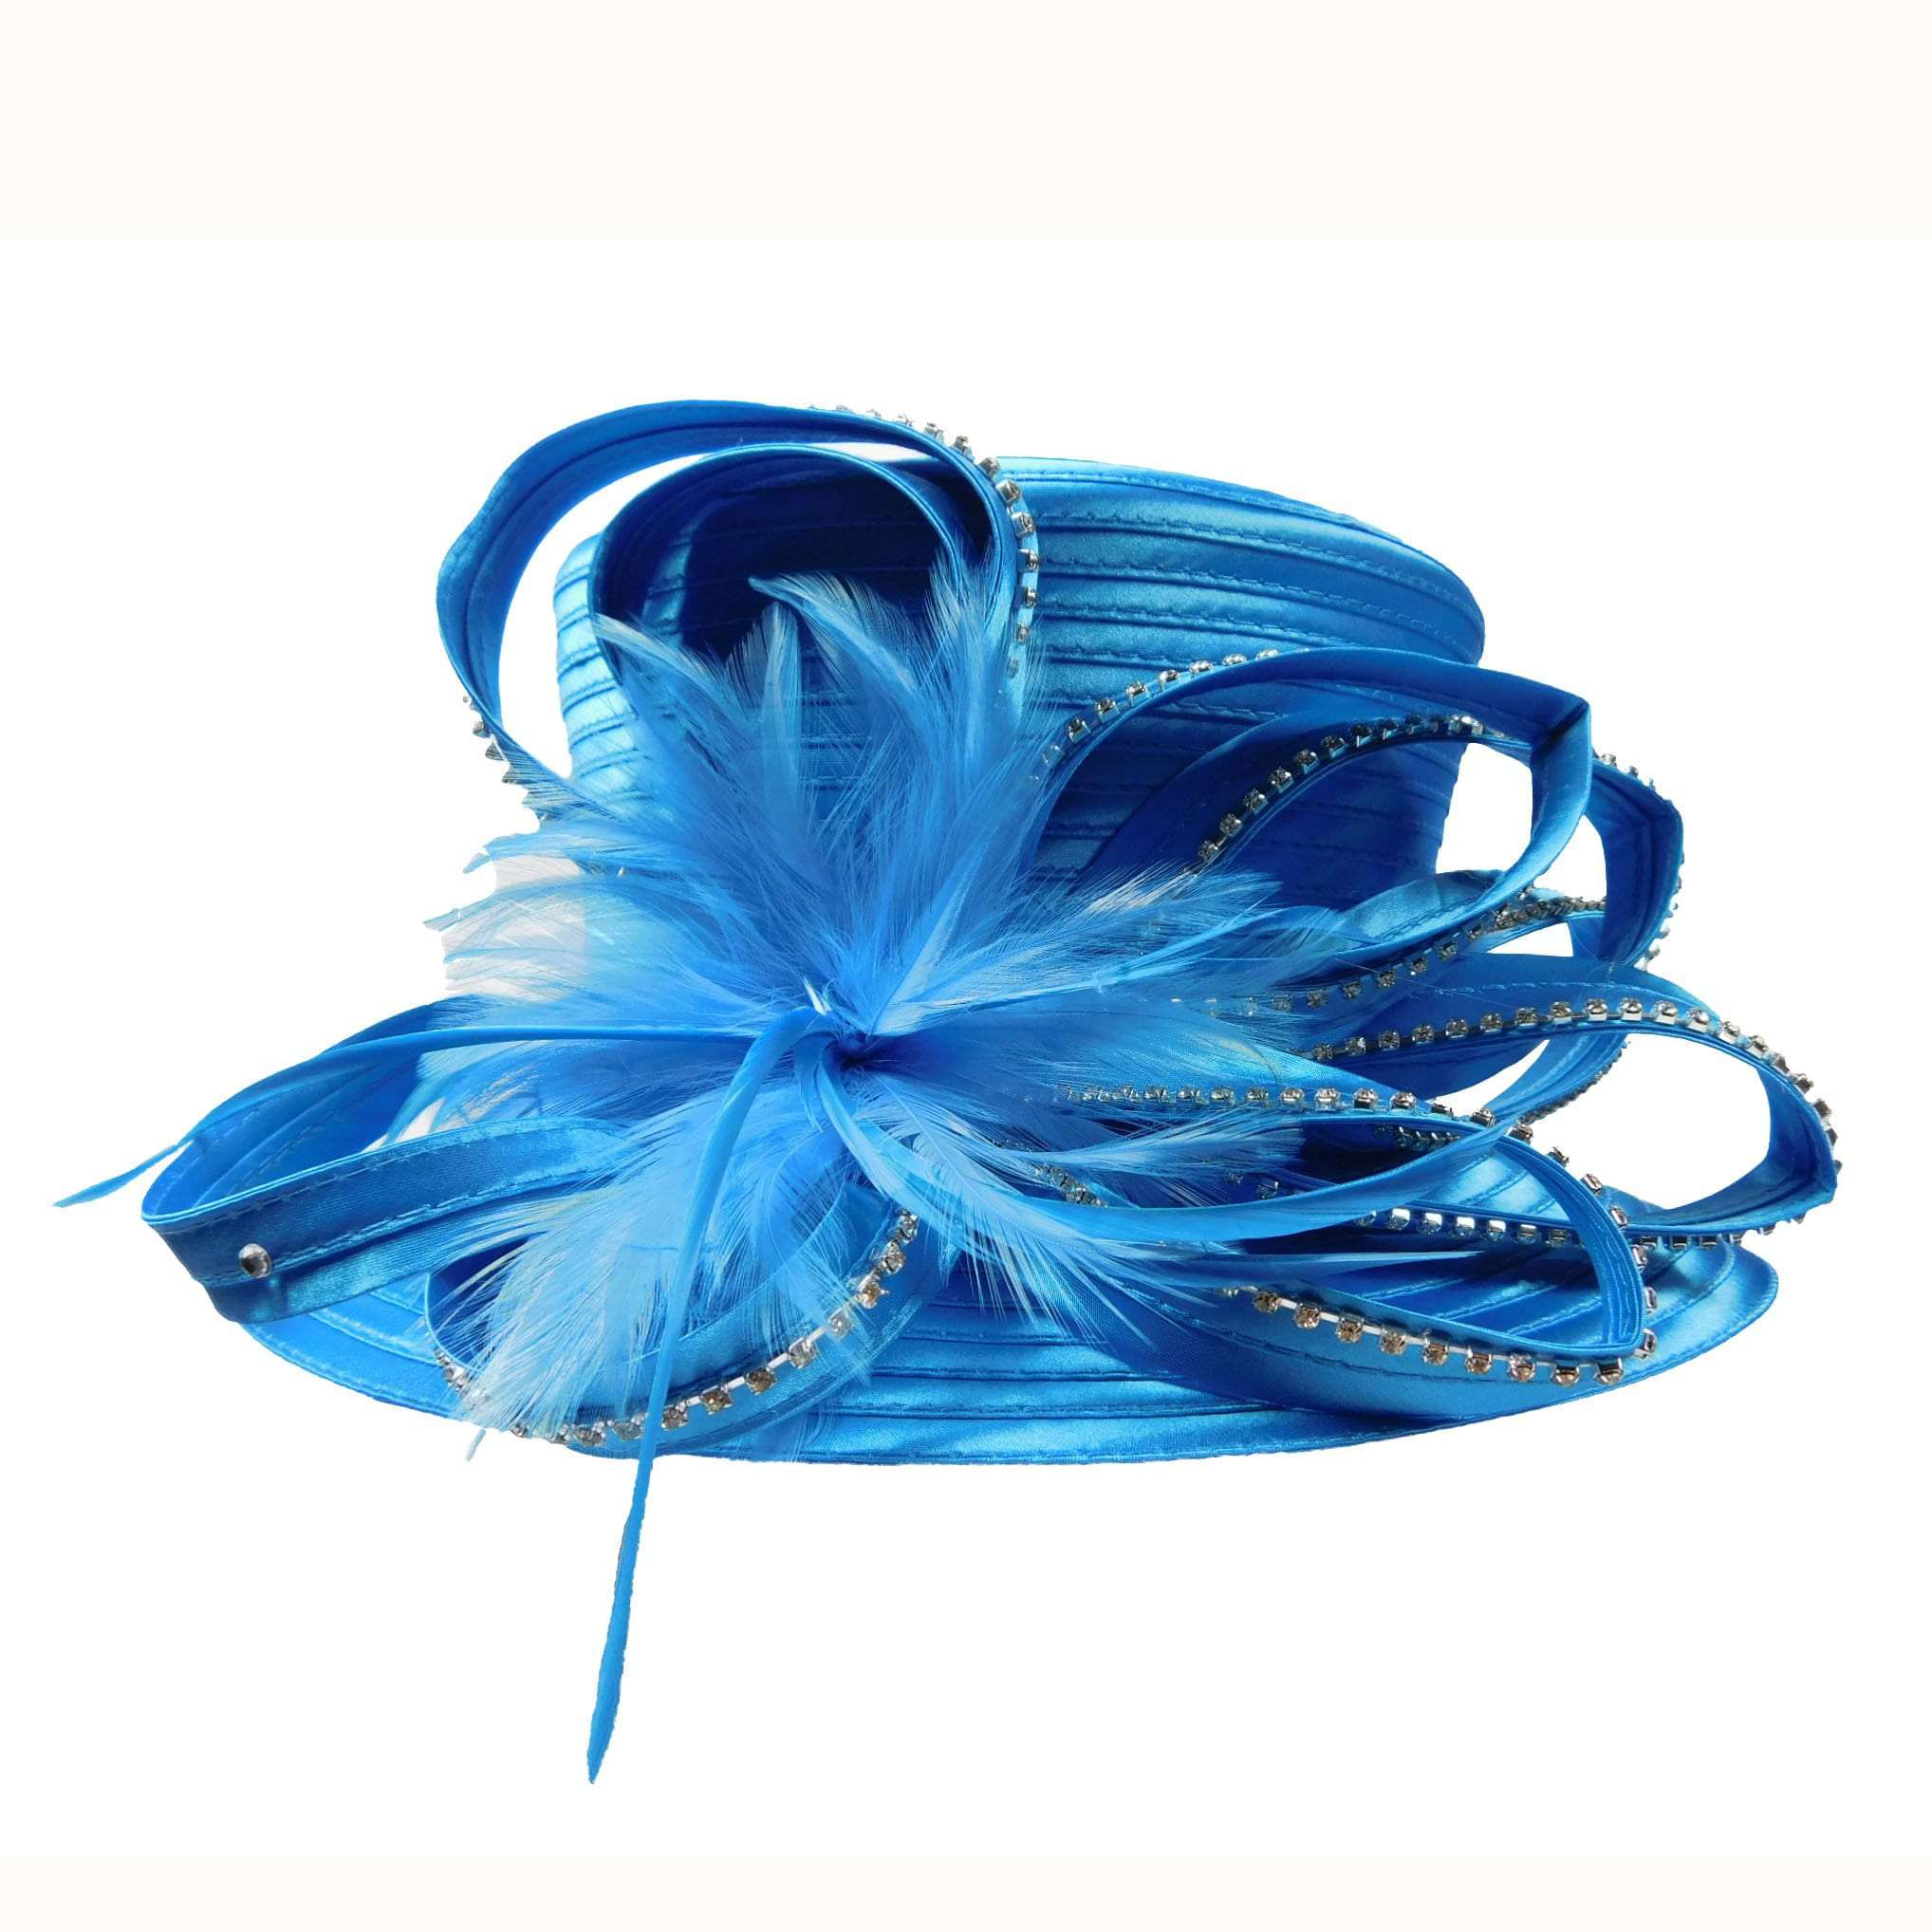 Satin Ribbon Dress Hat with Loopy Ribbon Accent Dress Hat Something Special LA WWSR806AQ Aqua  